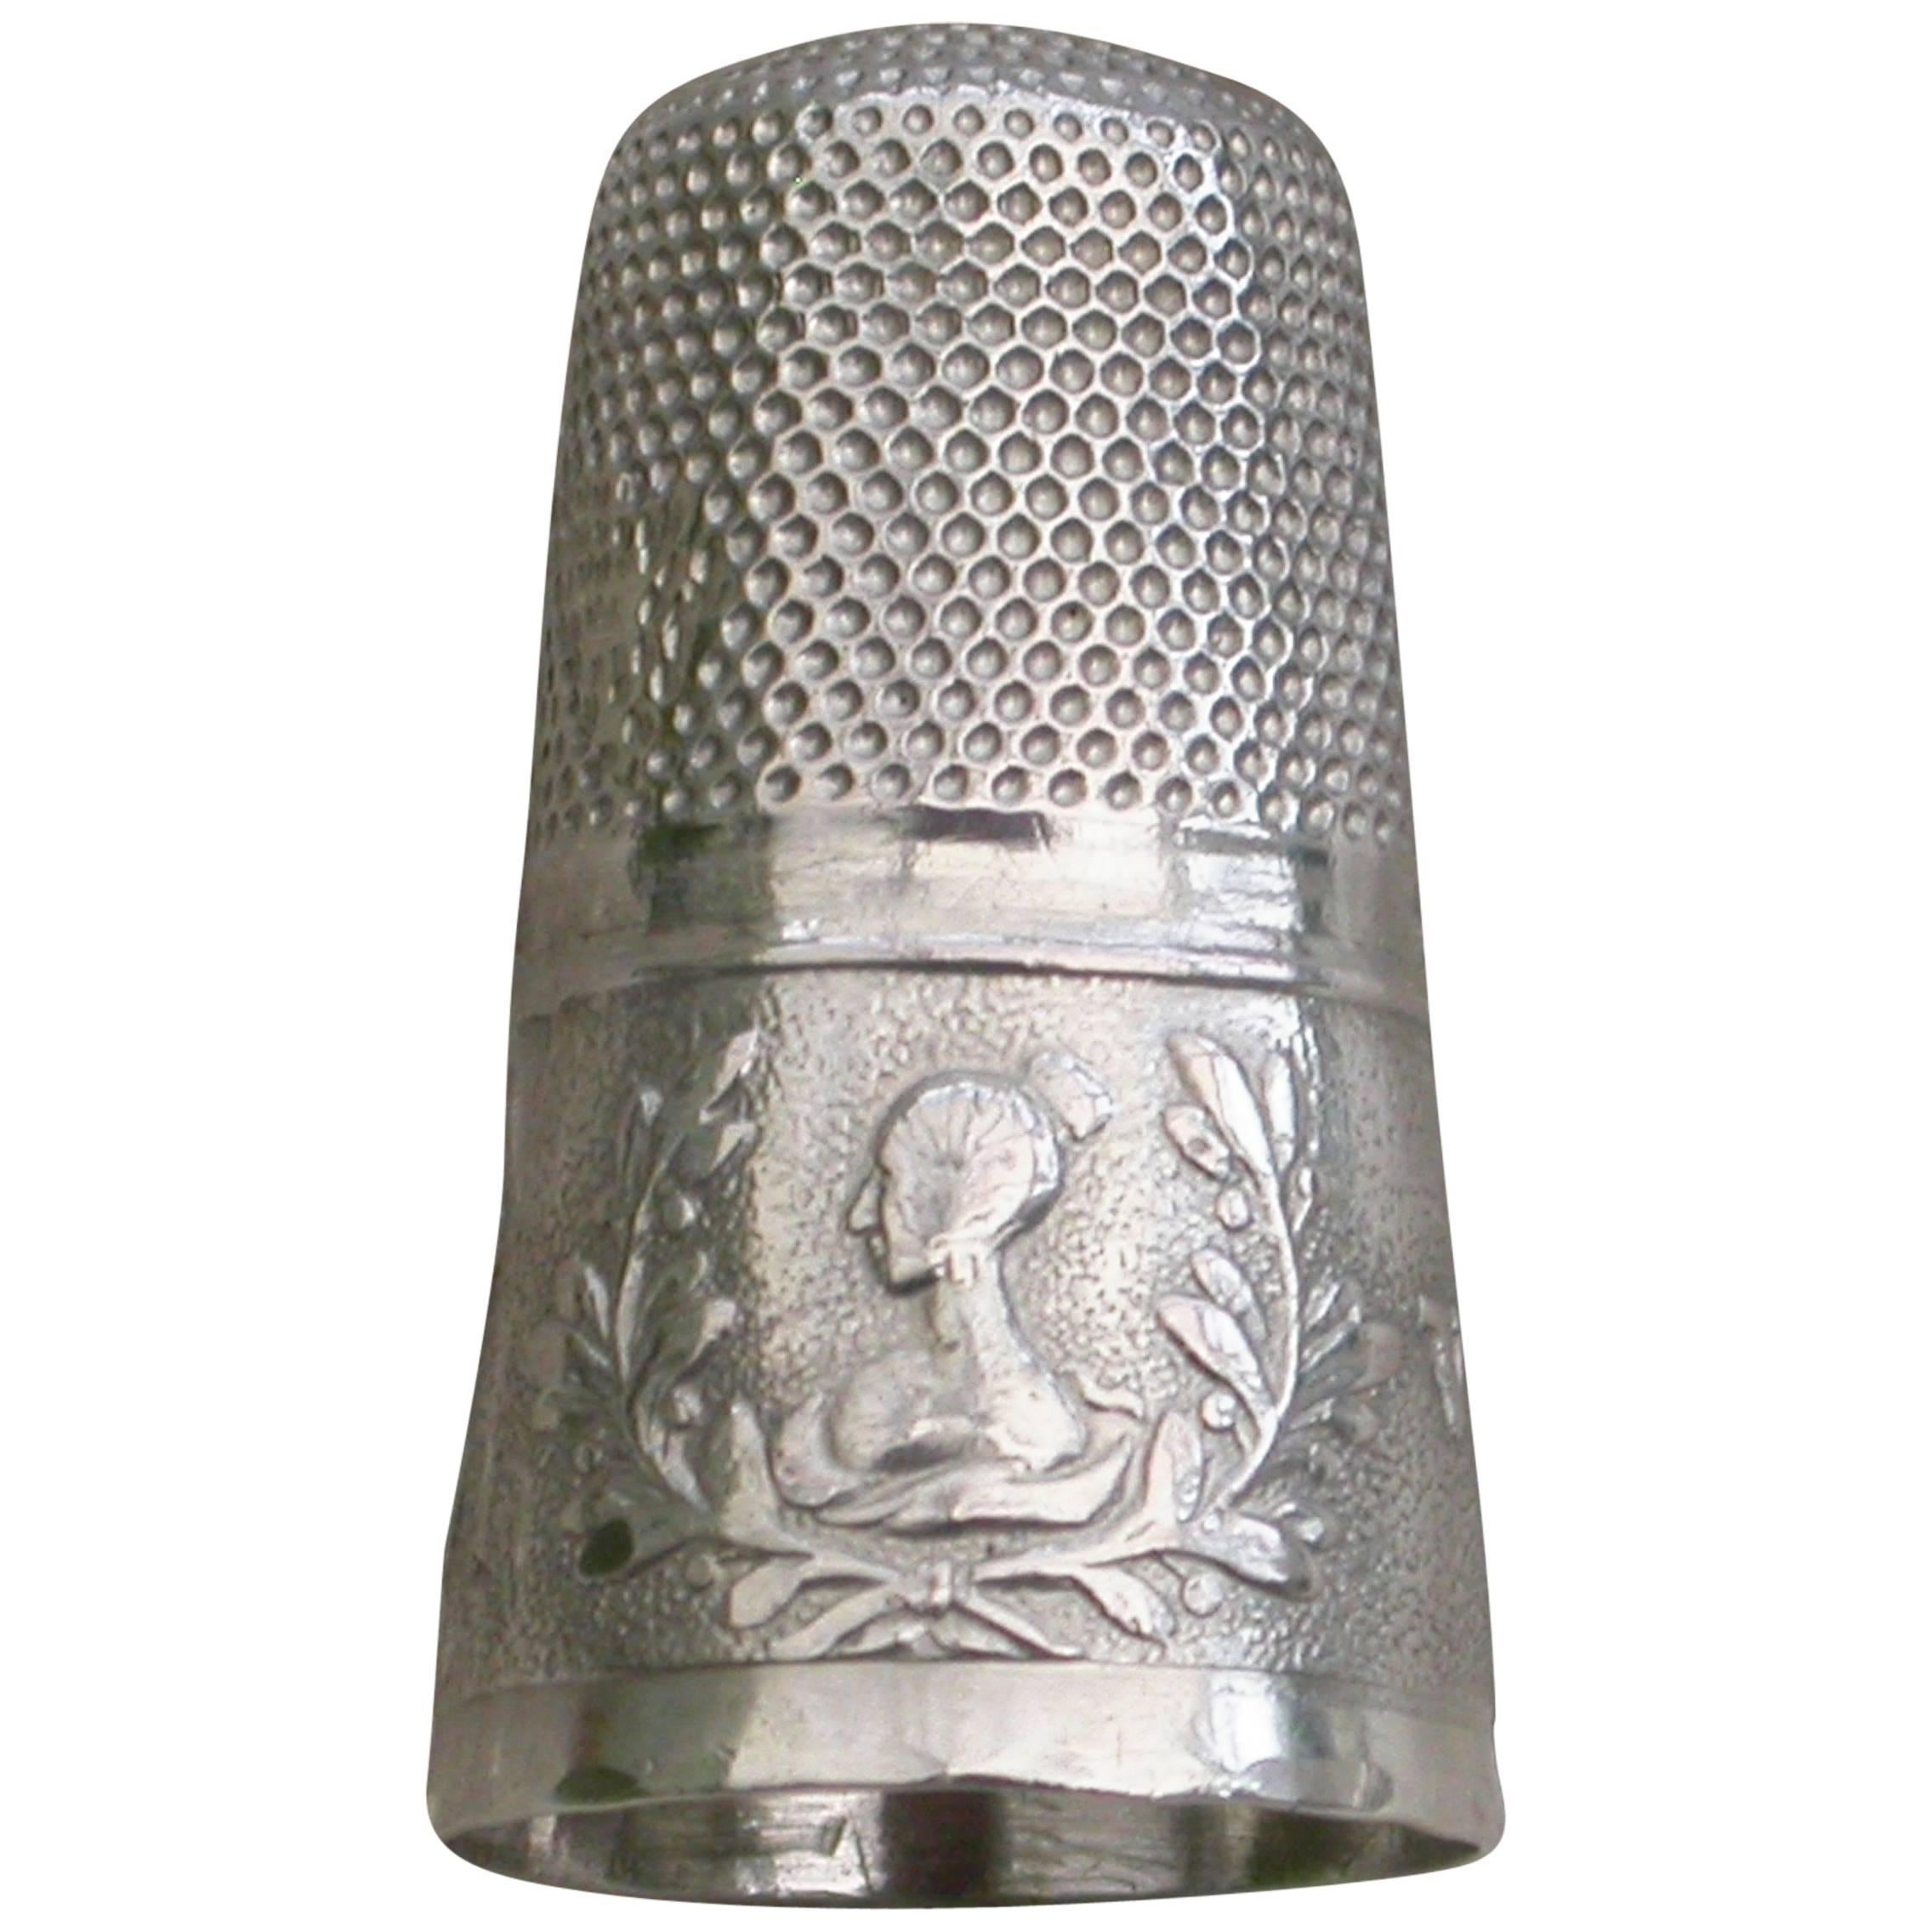 Queen Victoria's Coronation Commemorative Silver Thimble